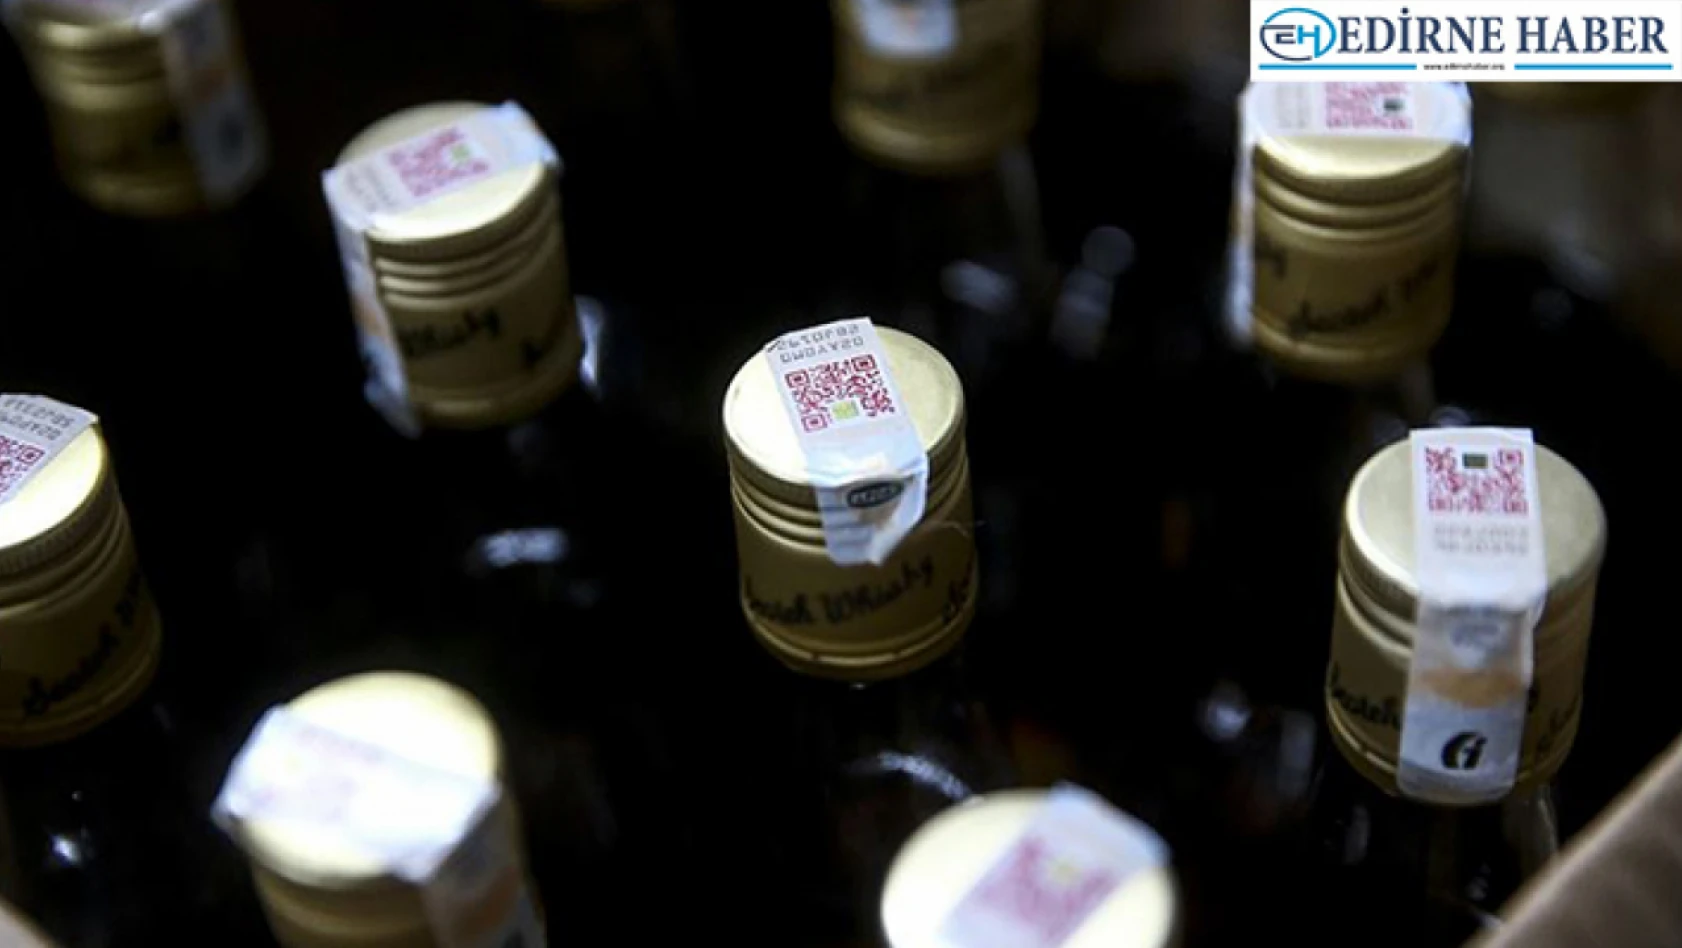 Edirne'de 17 şişe kaçak içki ve çok miktarda kaçak ürün ele geçirildi